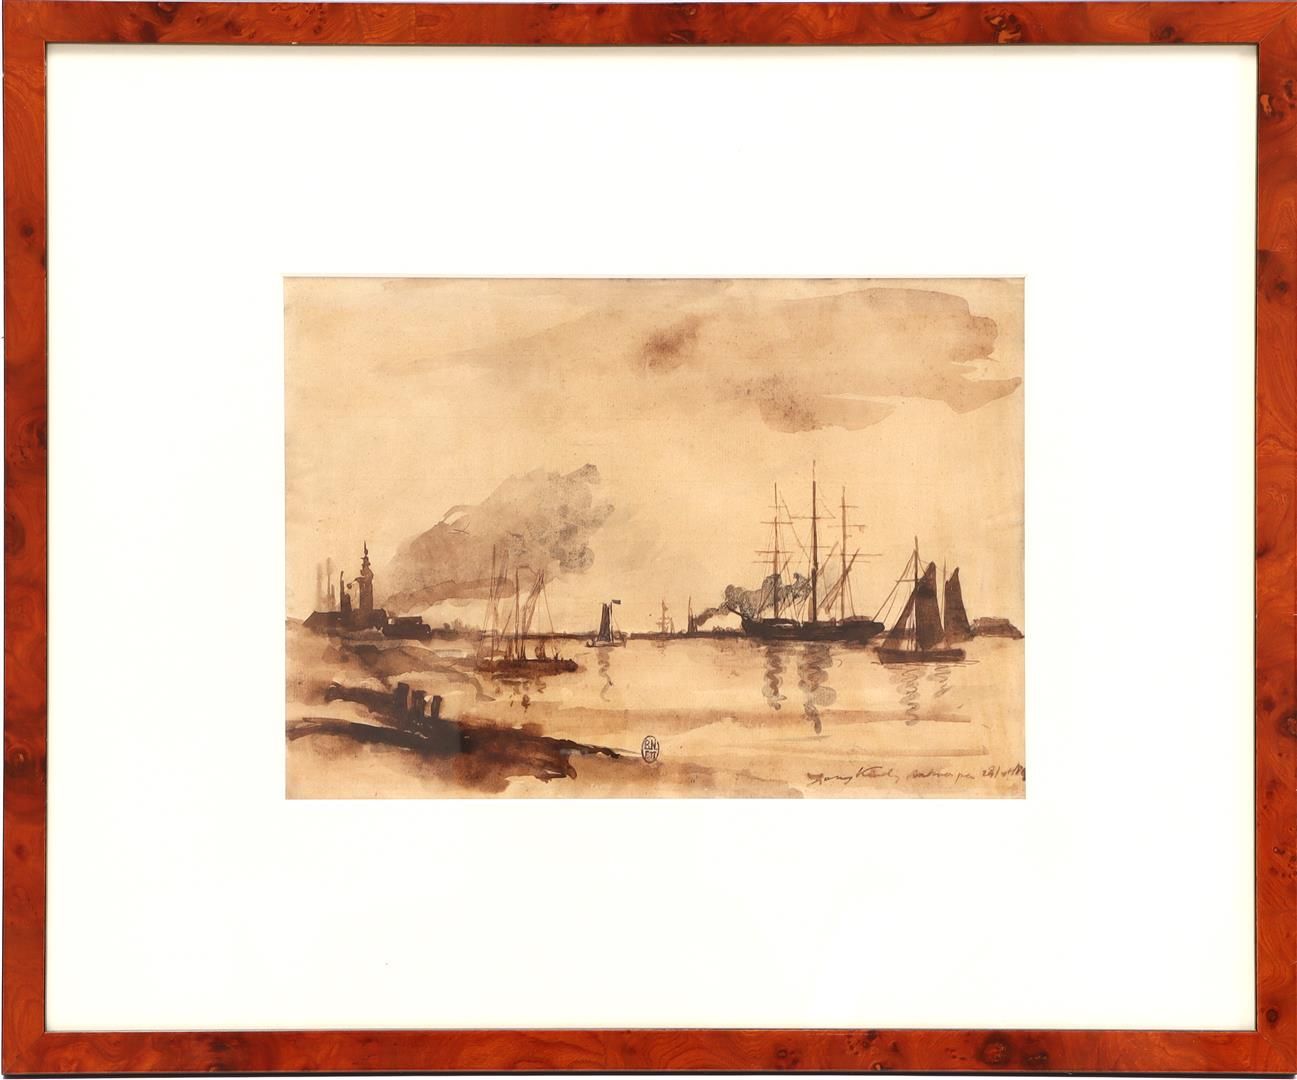 Johan Barthold JONGKIND 约翰-巴托尔-琼金德(1819-1891)

安特卫普附近斯海尔德河上的船只，研究/sepia图，24x34厘米